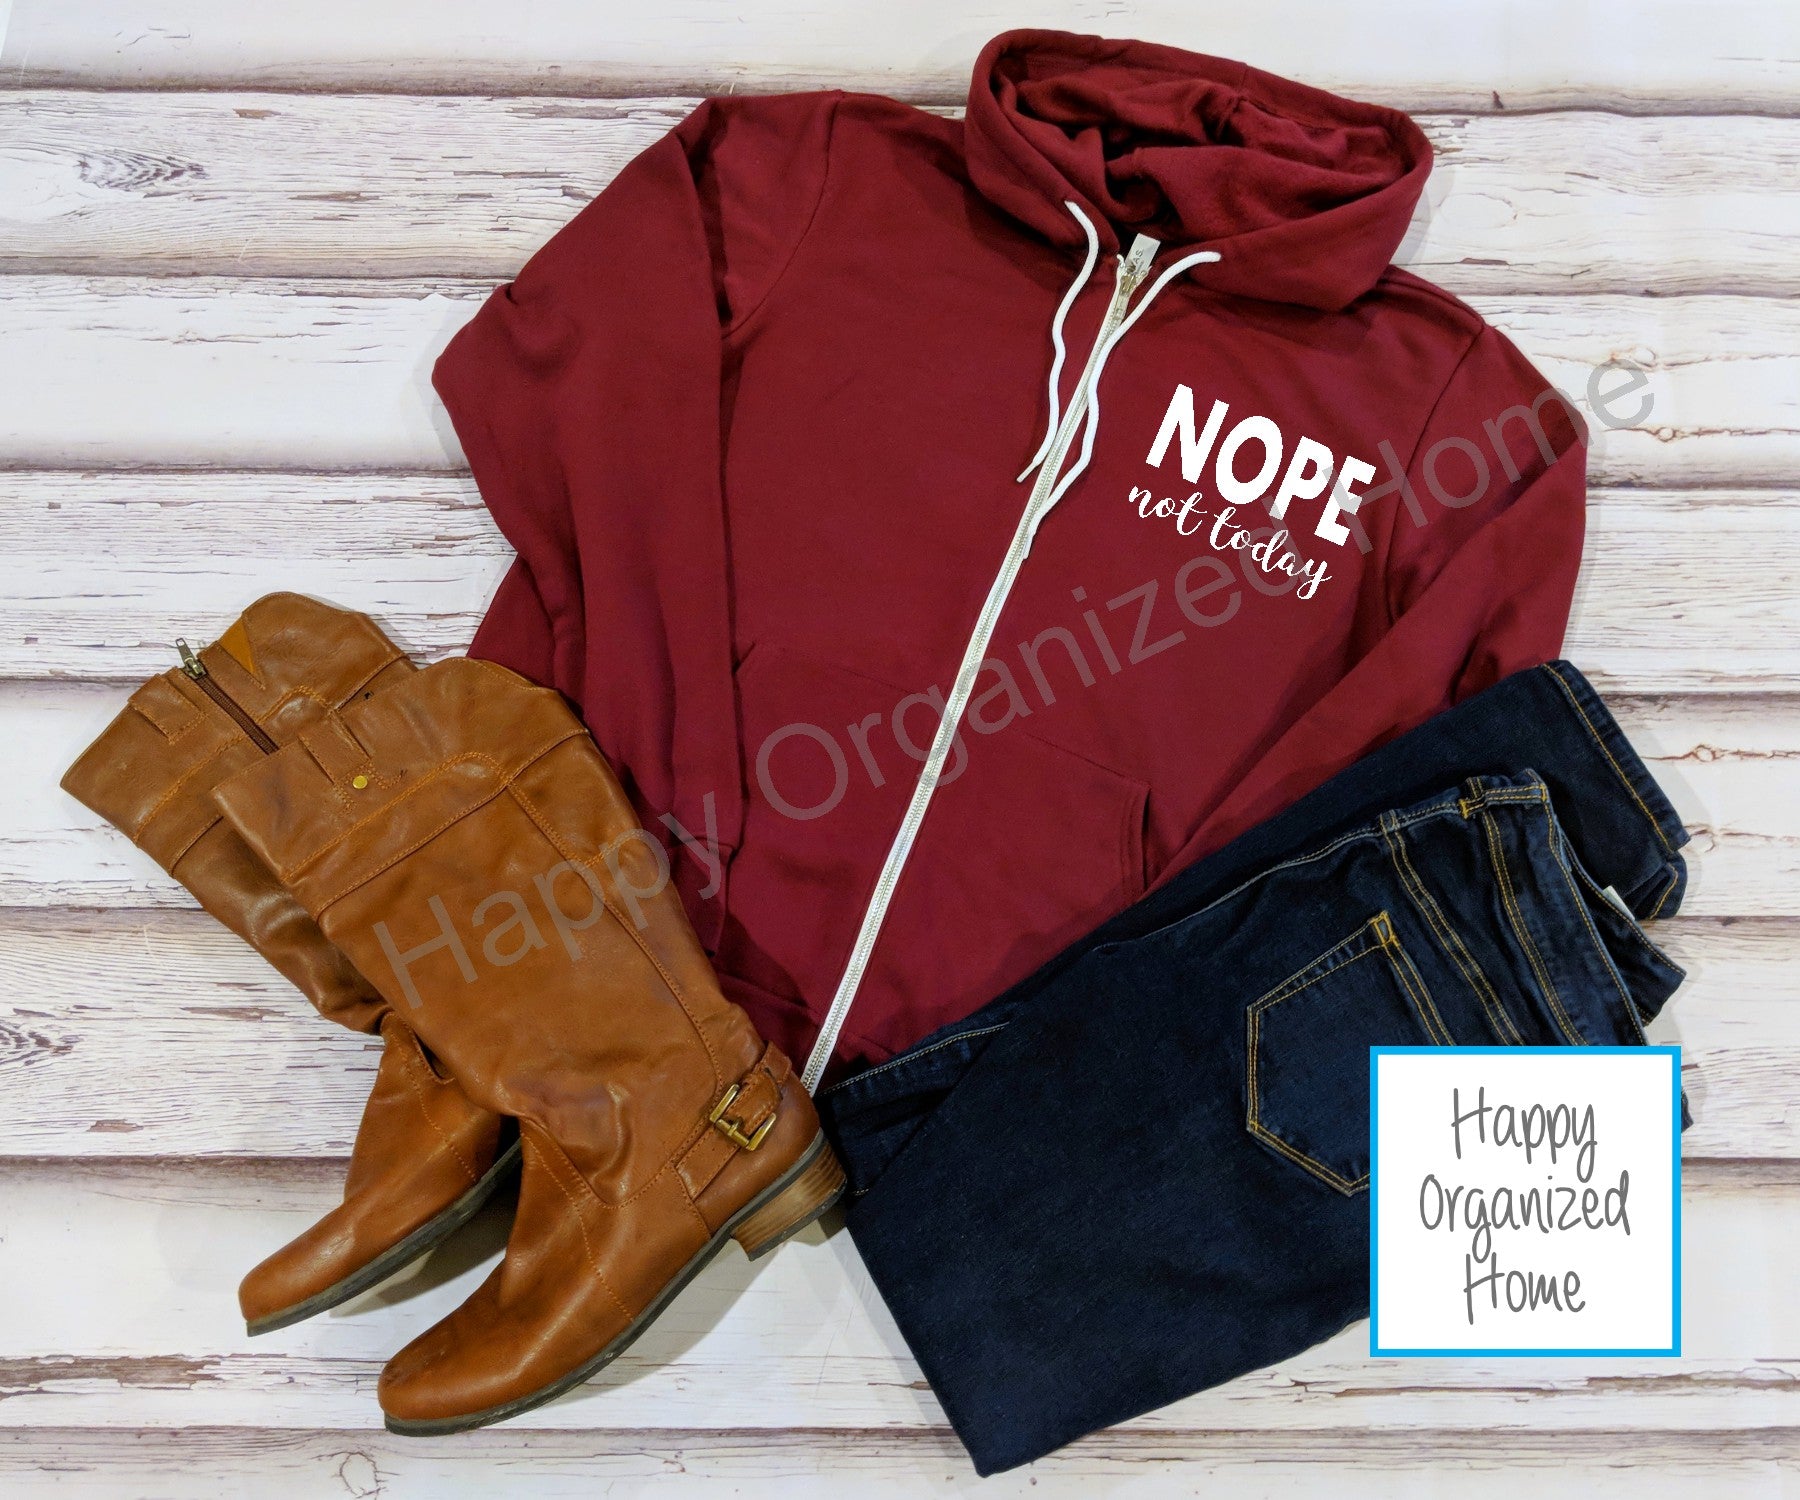 Nope not today - Zip up Hoodie Sweatshirt